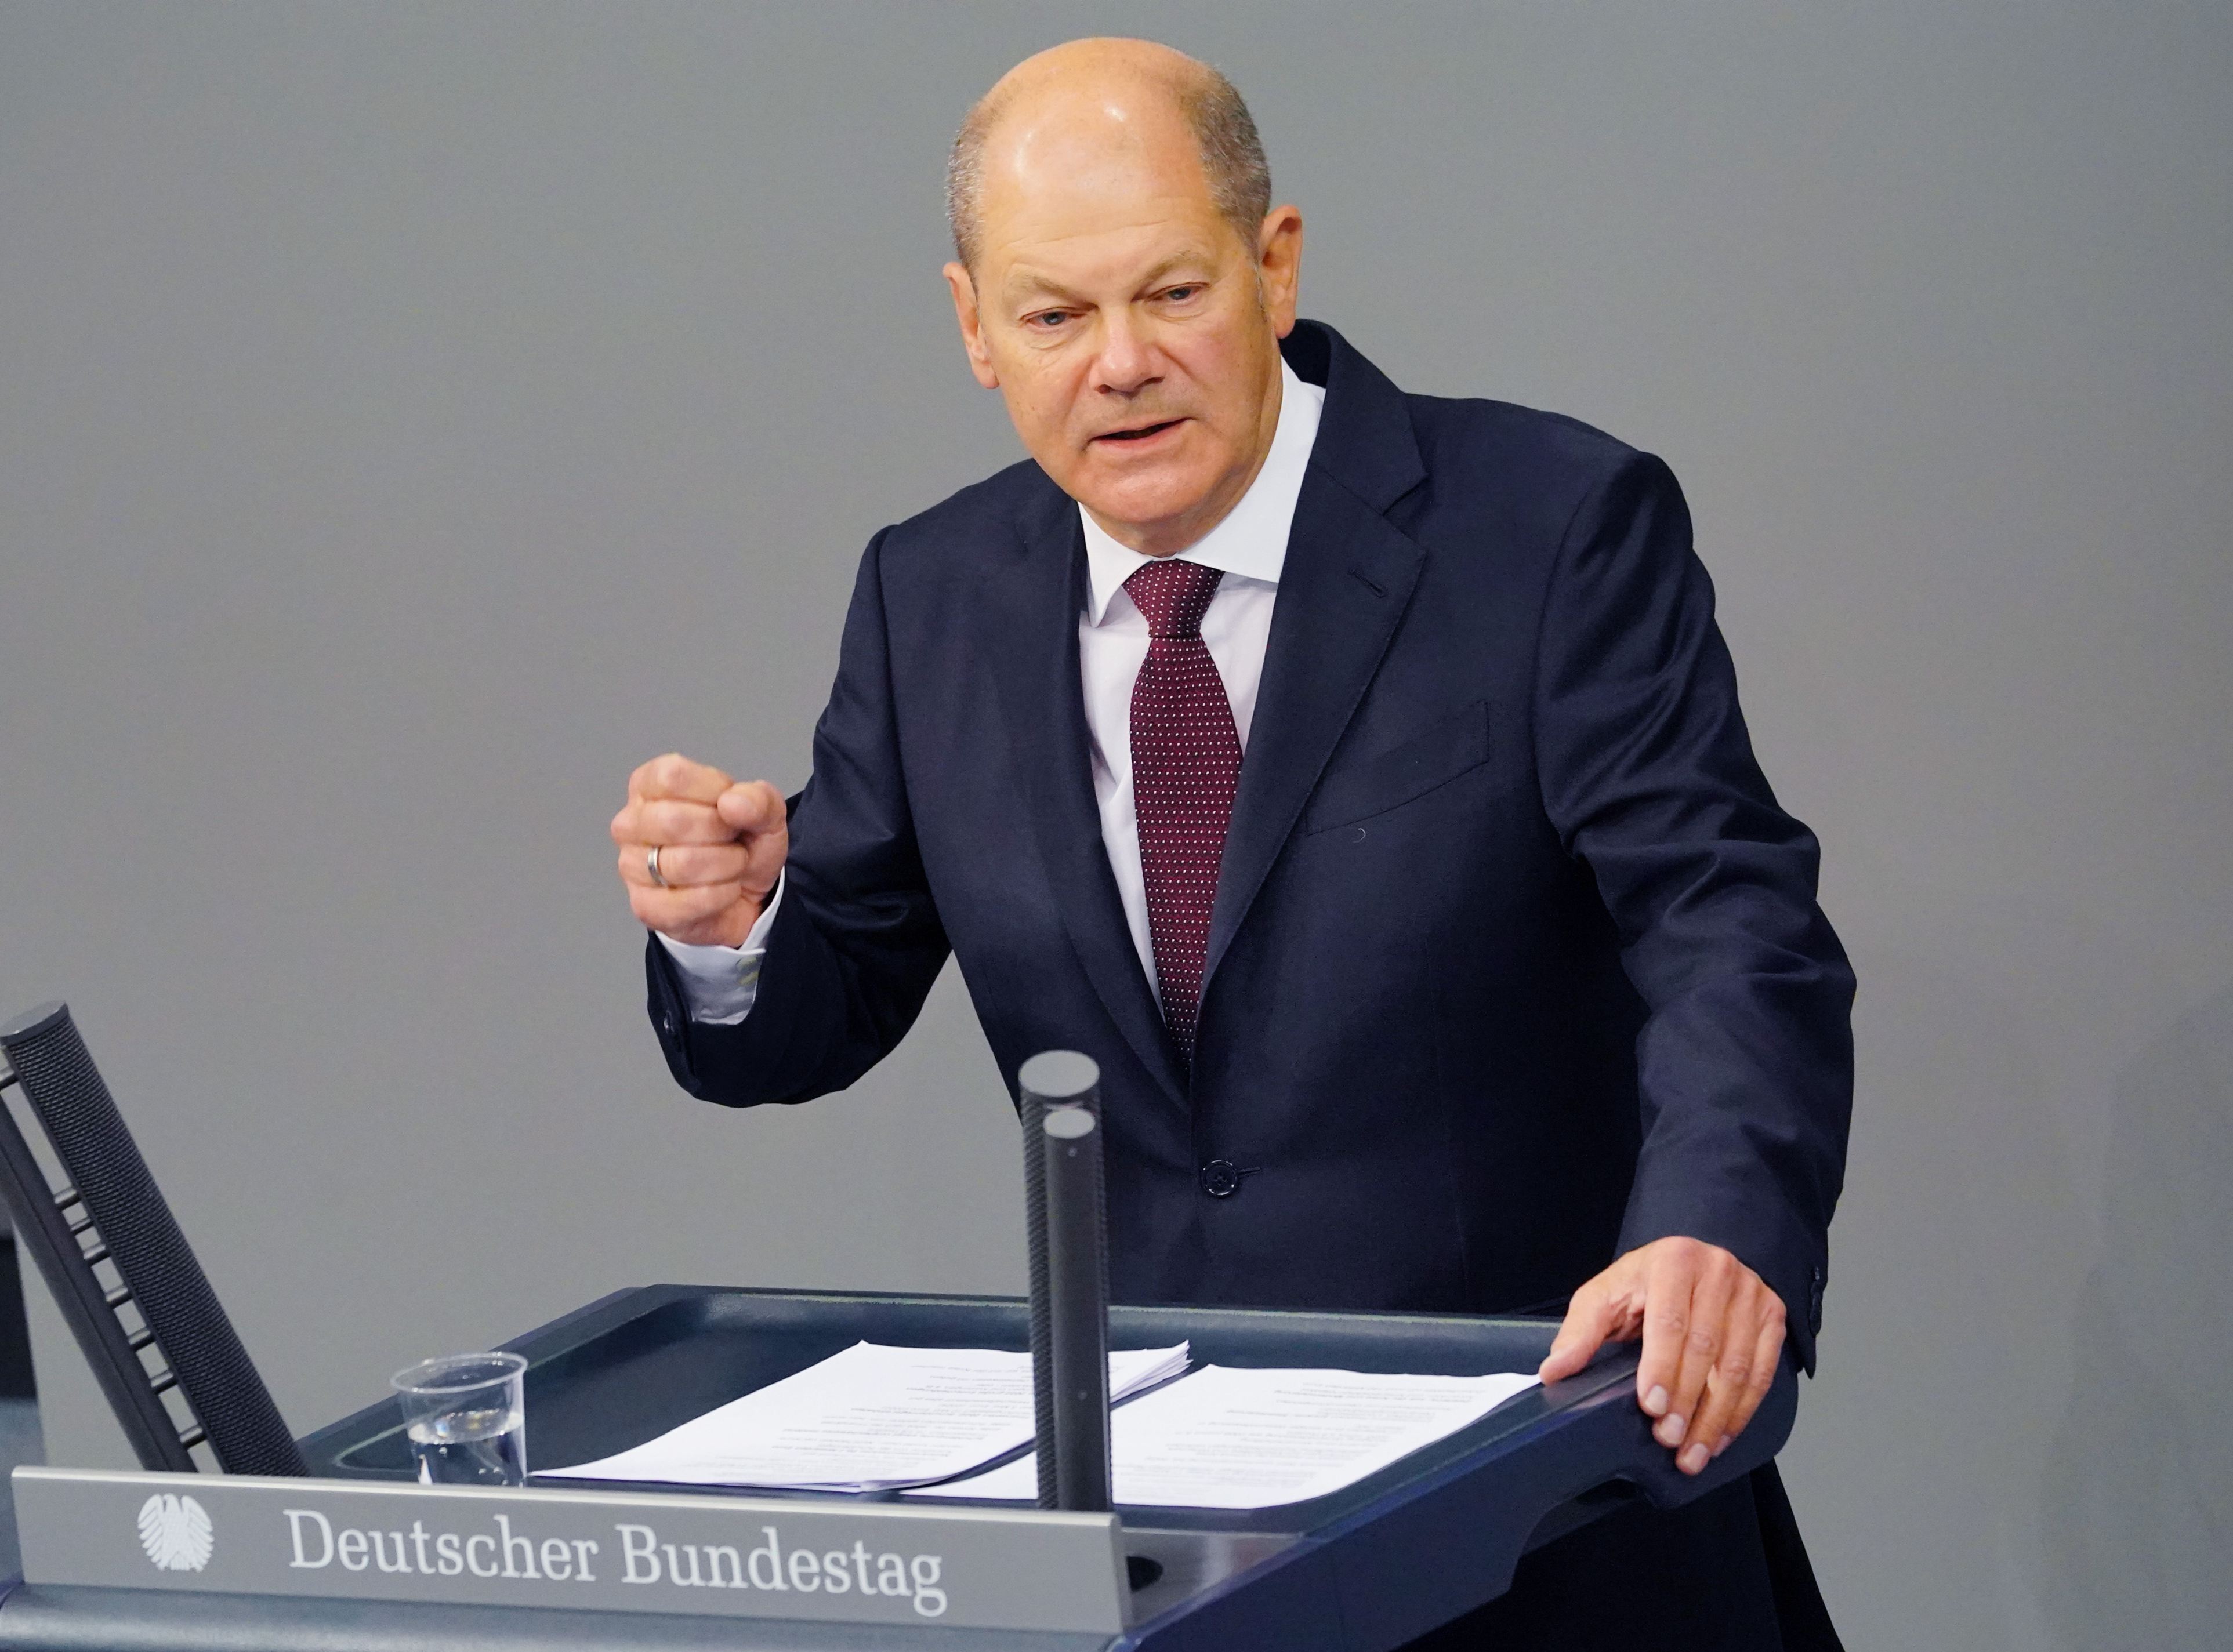  Olaf Scholz vrea o coaliţie a SPD cu ecologiştii şi cu Partidul Liber-Democrat